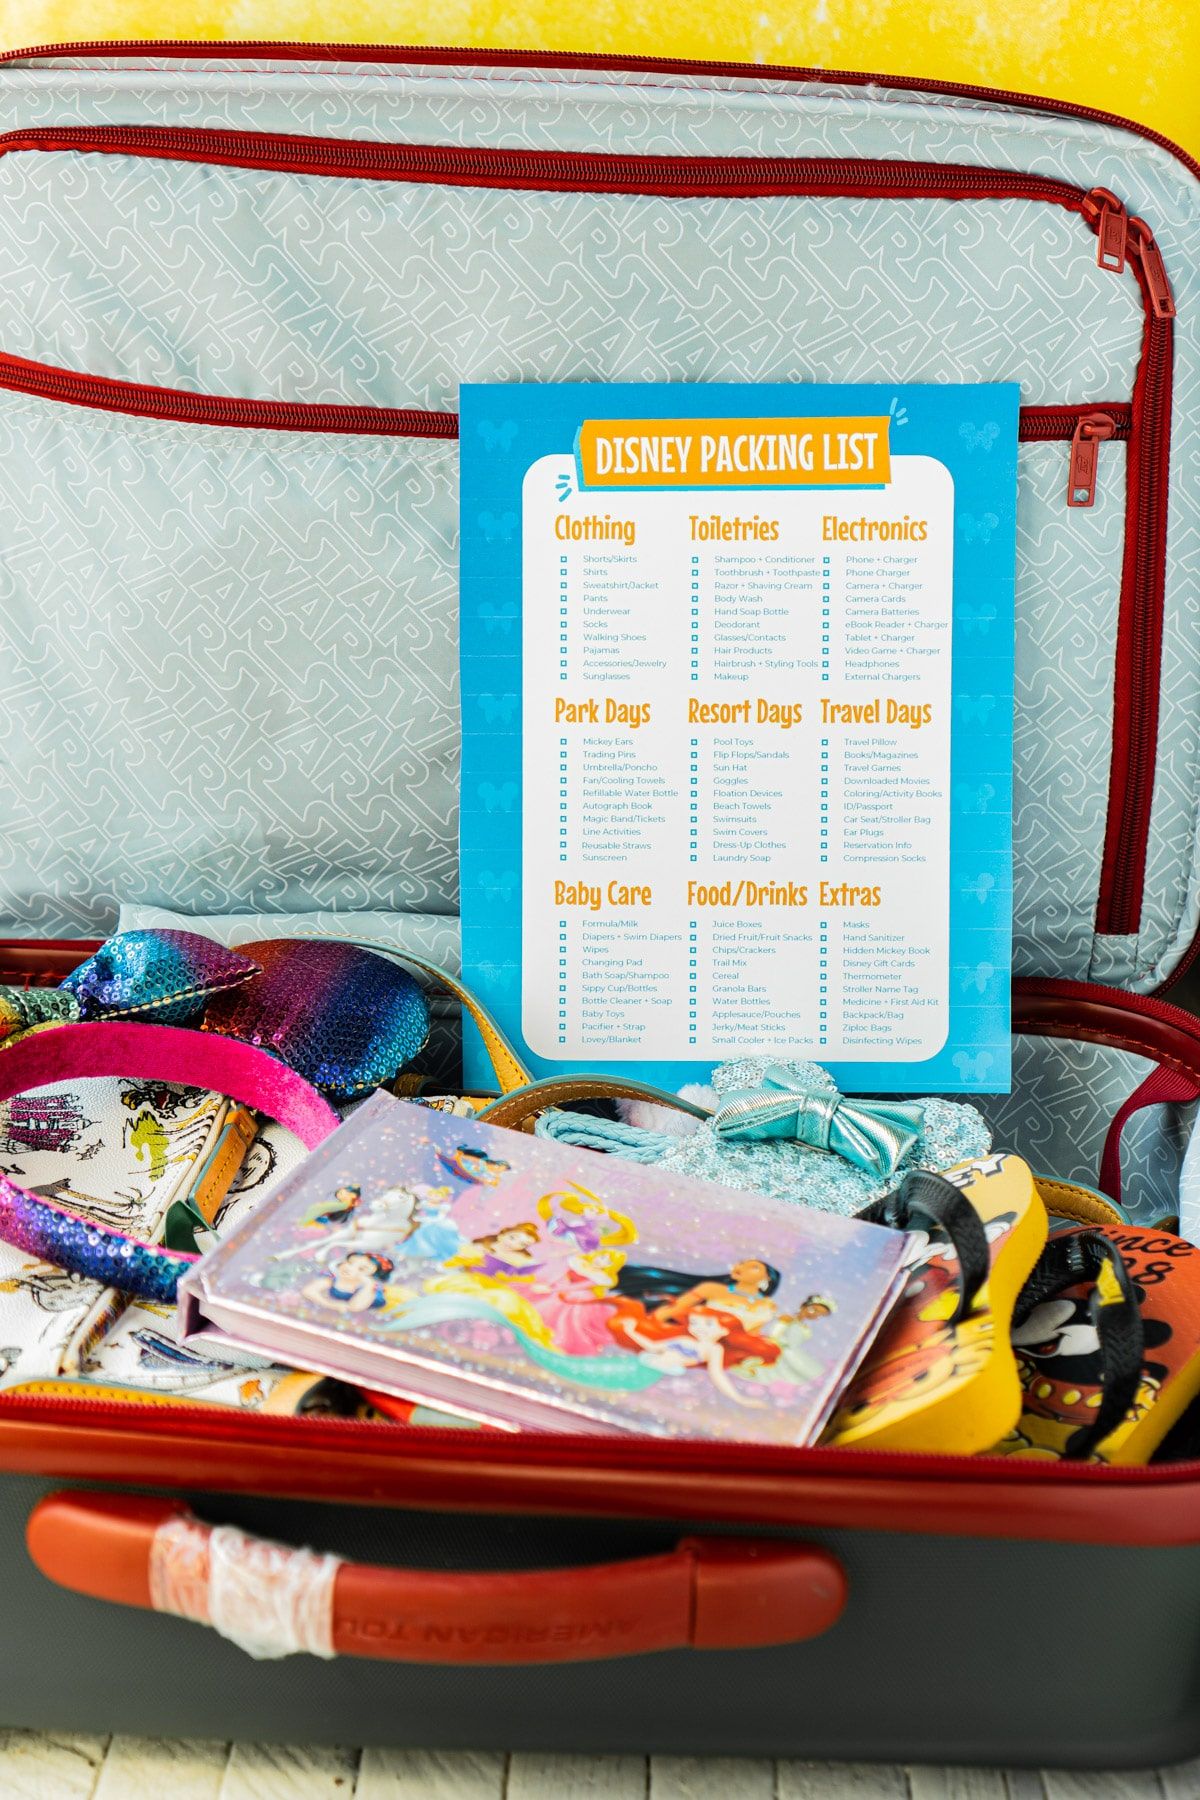 Lista de empaque de Disney encima de una maleta llena de artículos de Disney